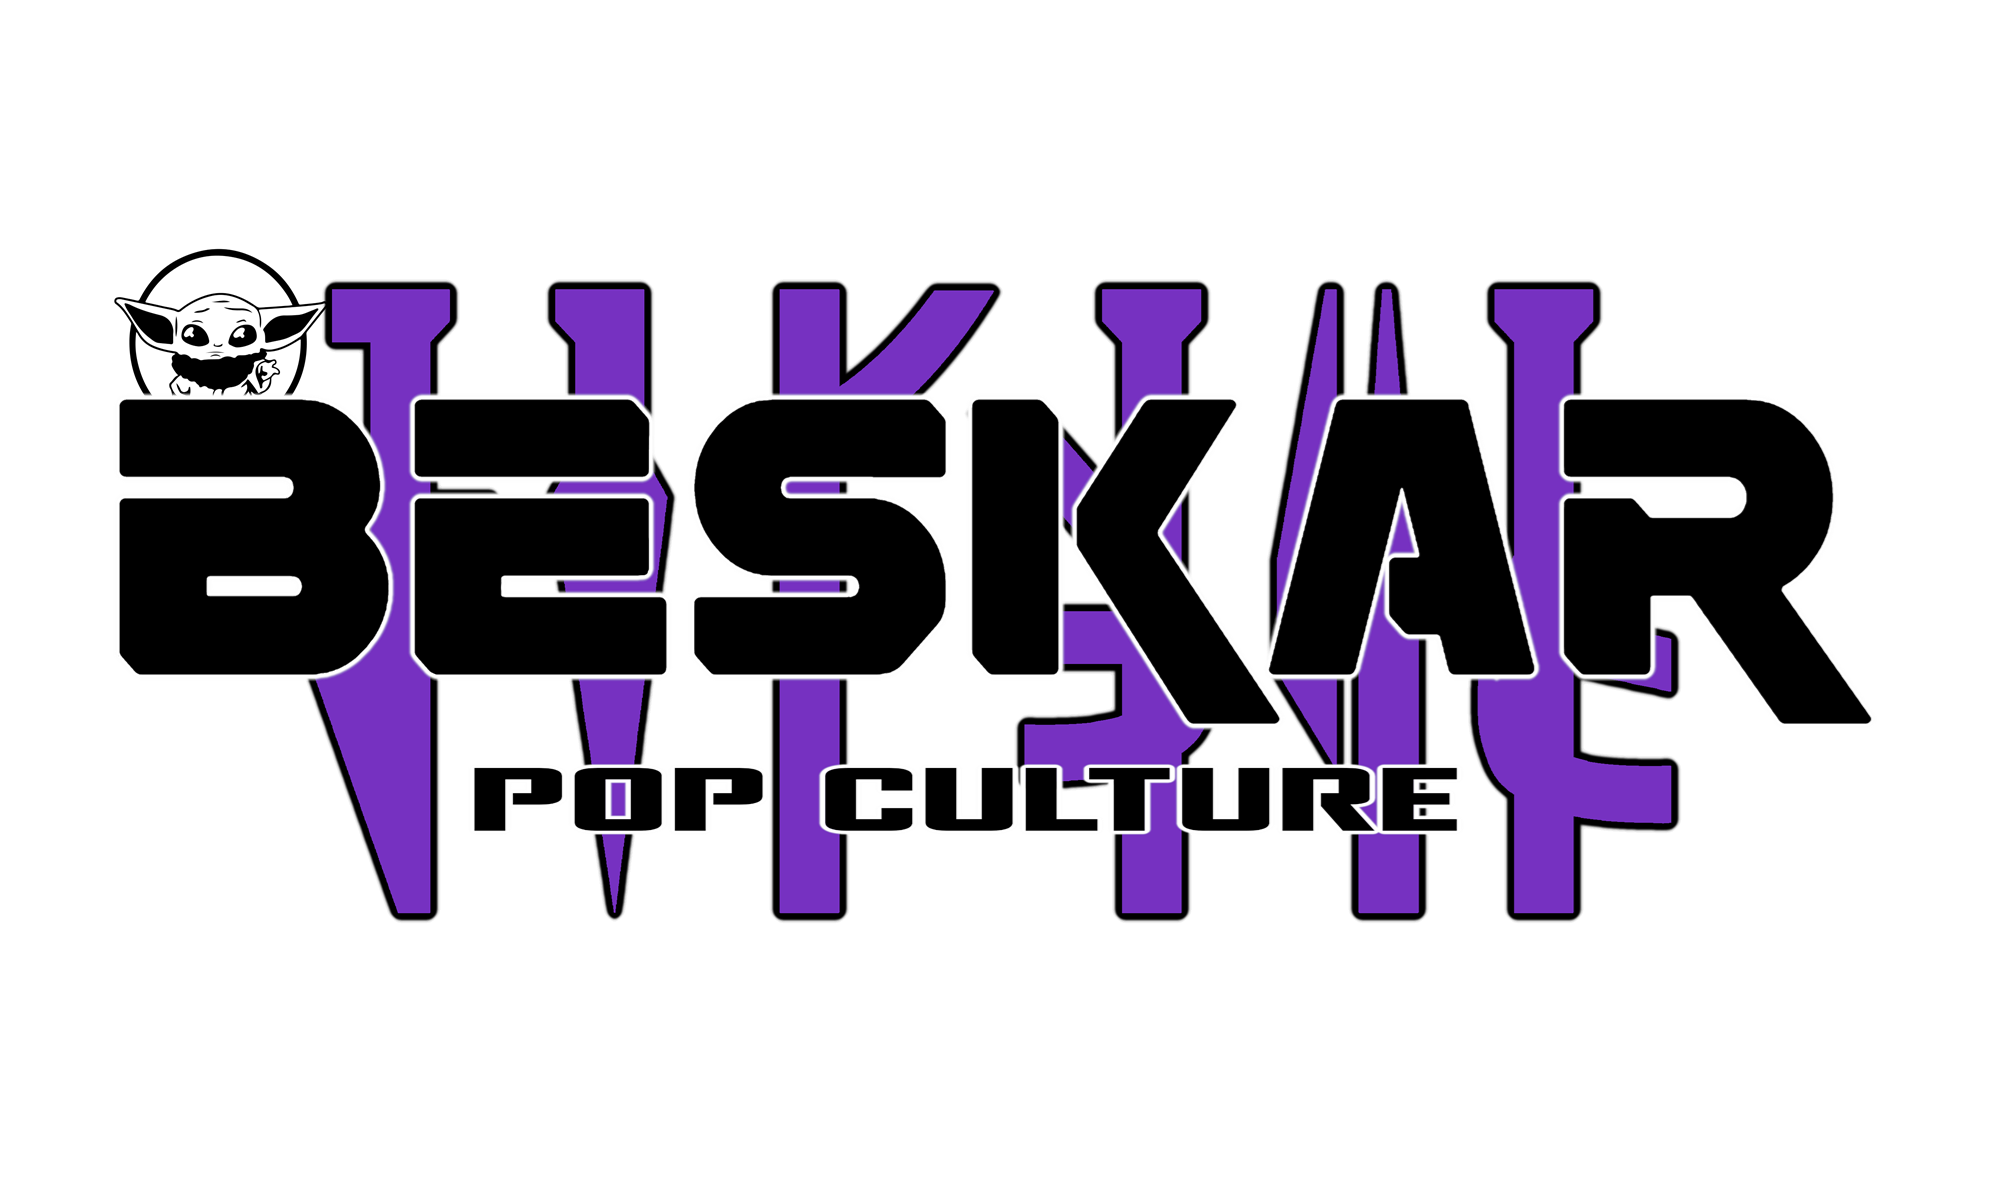 Beskar Pop Culture